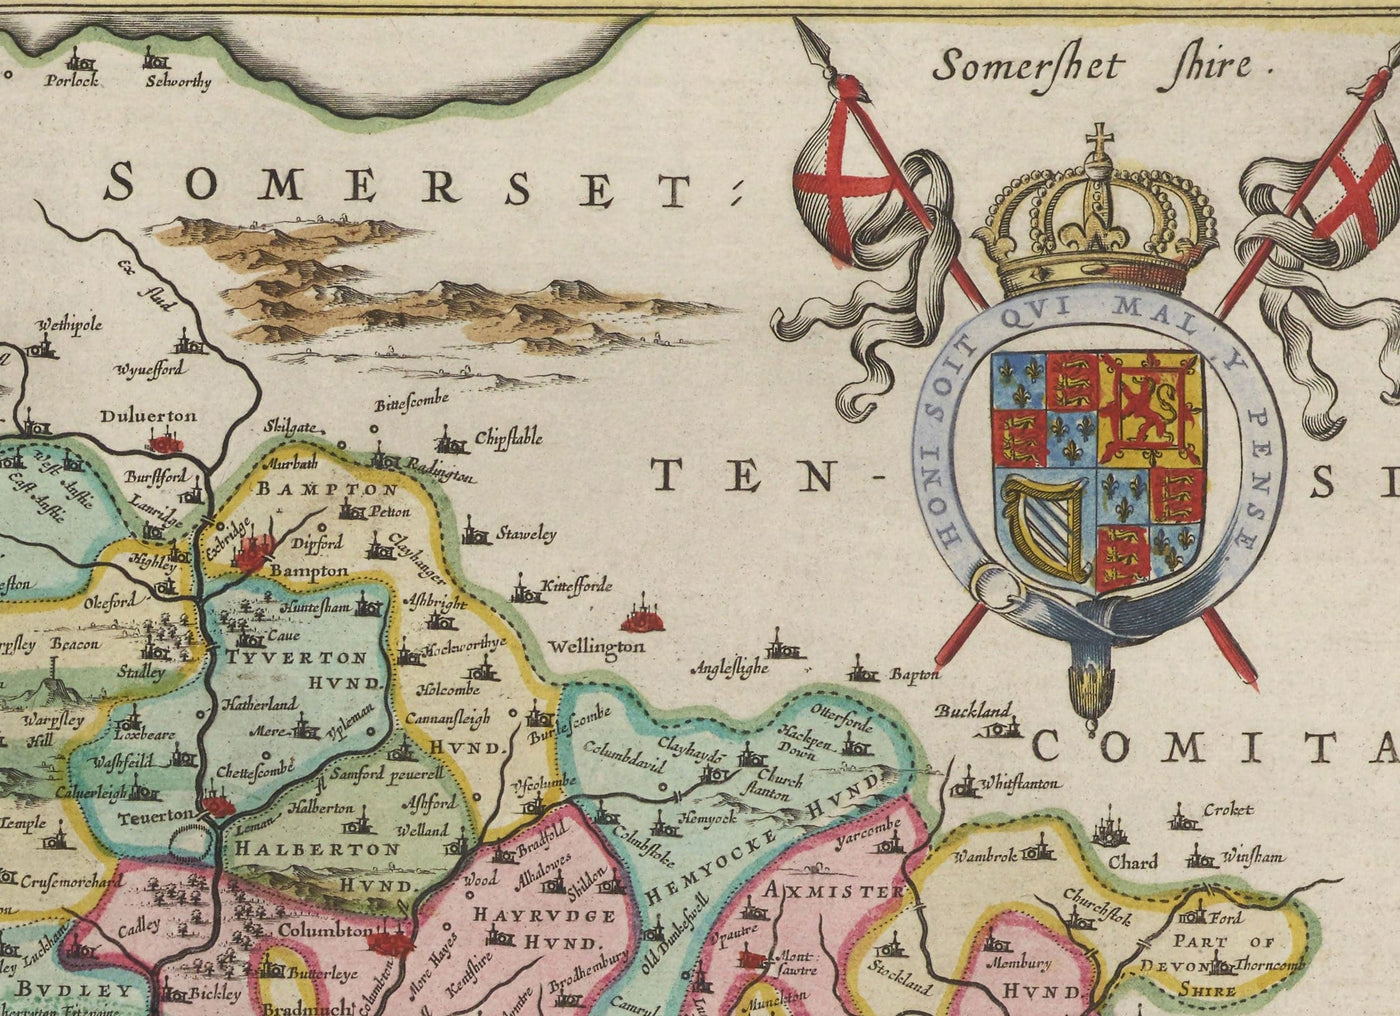 Alte Karte von Devon im Jahre 1665 von Joan Blaeu - Plymouth, Exeter, Torquay, Paignton, Exmouth, Barnstaple, Westland